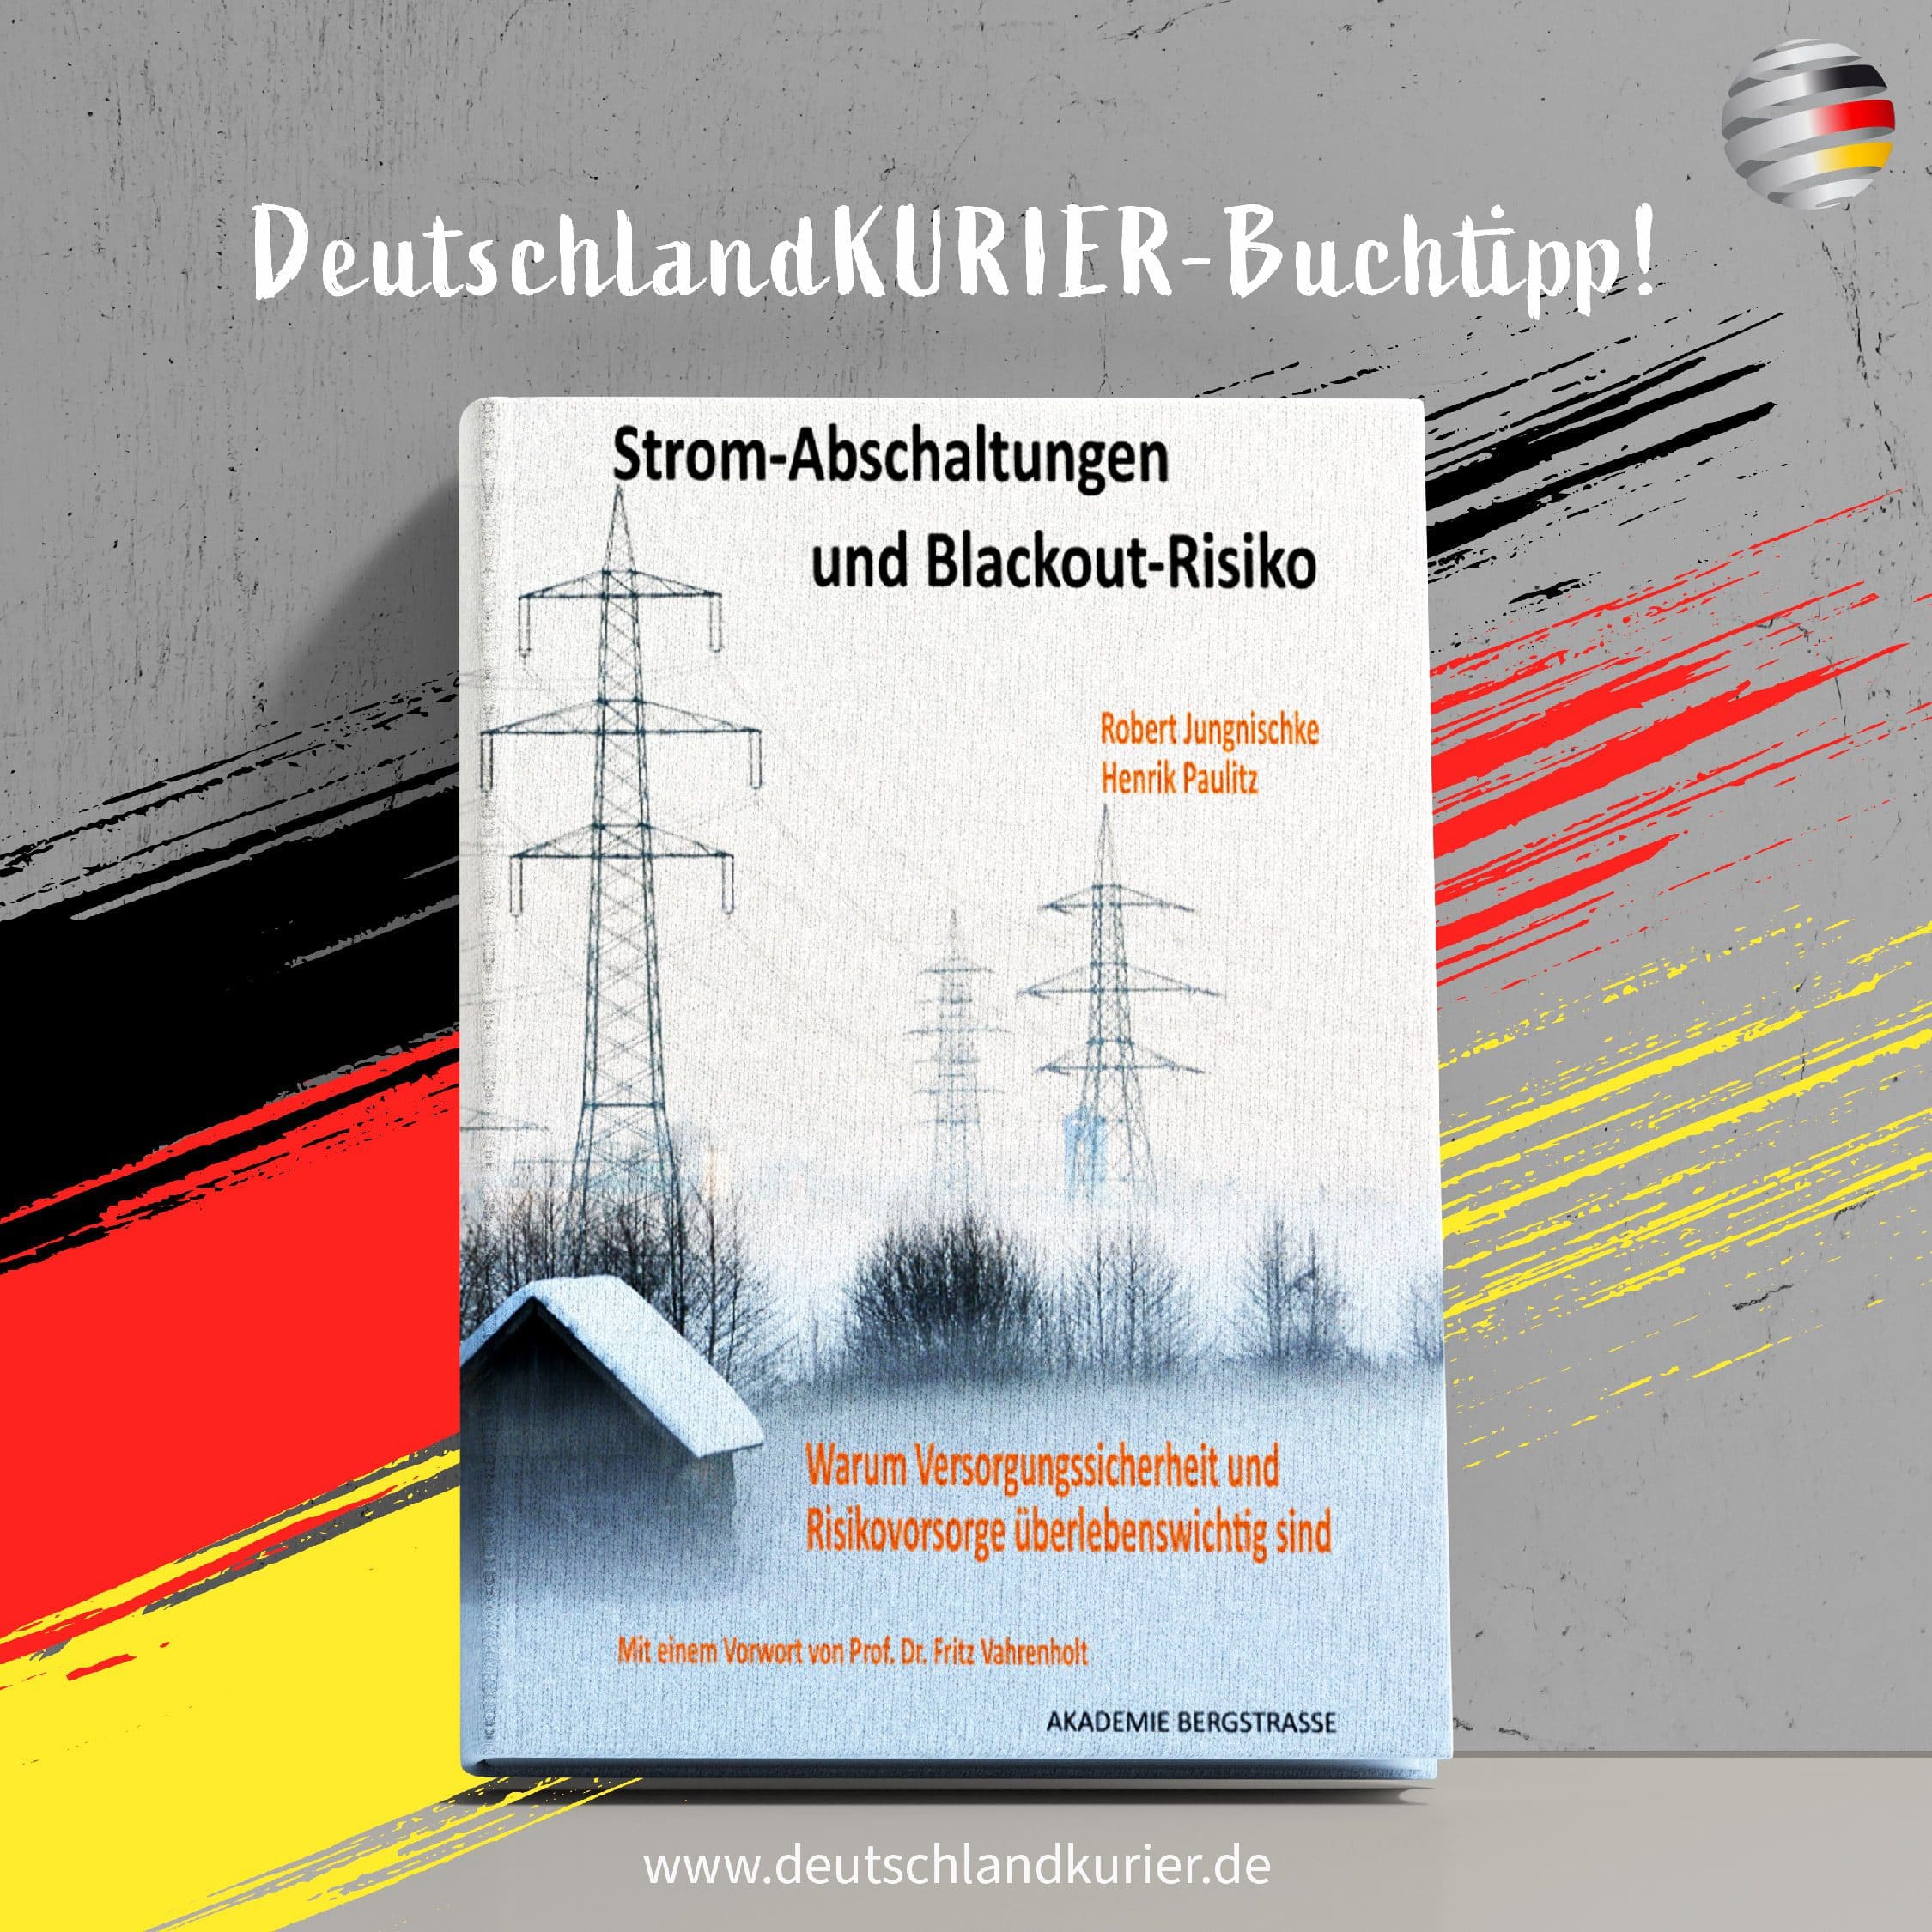 strom-abschaltungen-und-blackout-risiko-von-robert-jungnischke-und-henrik-paulitz